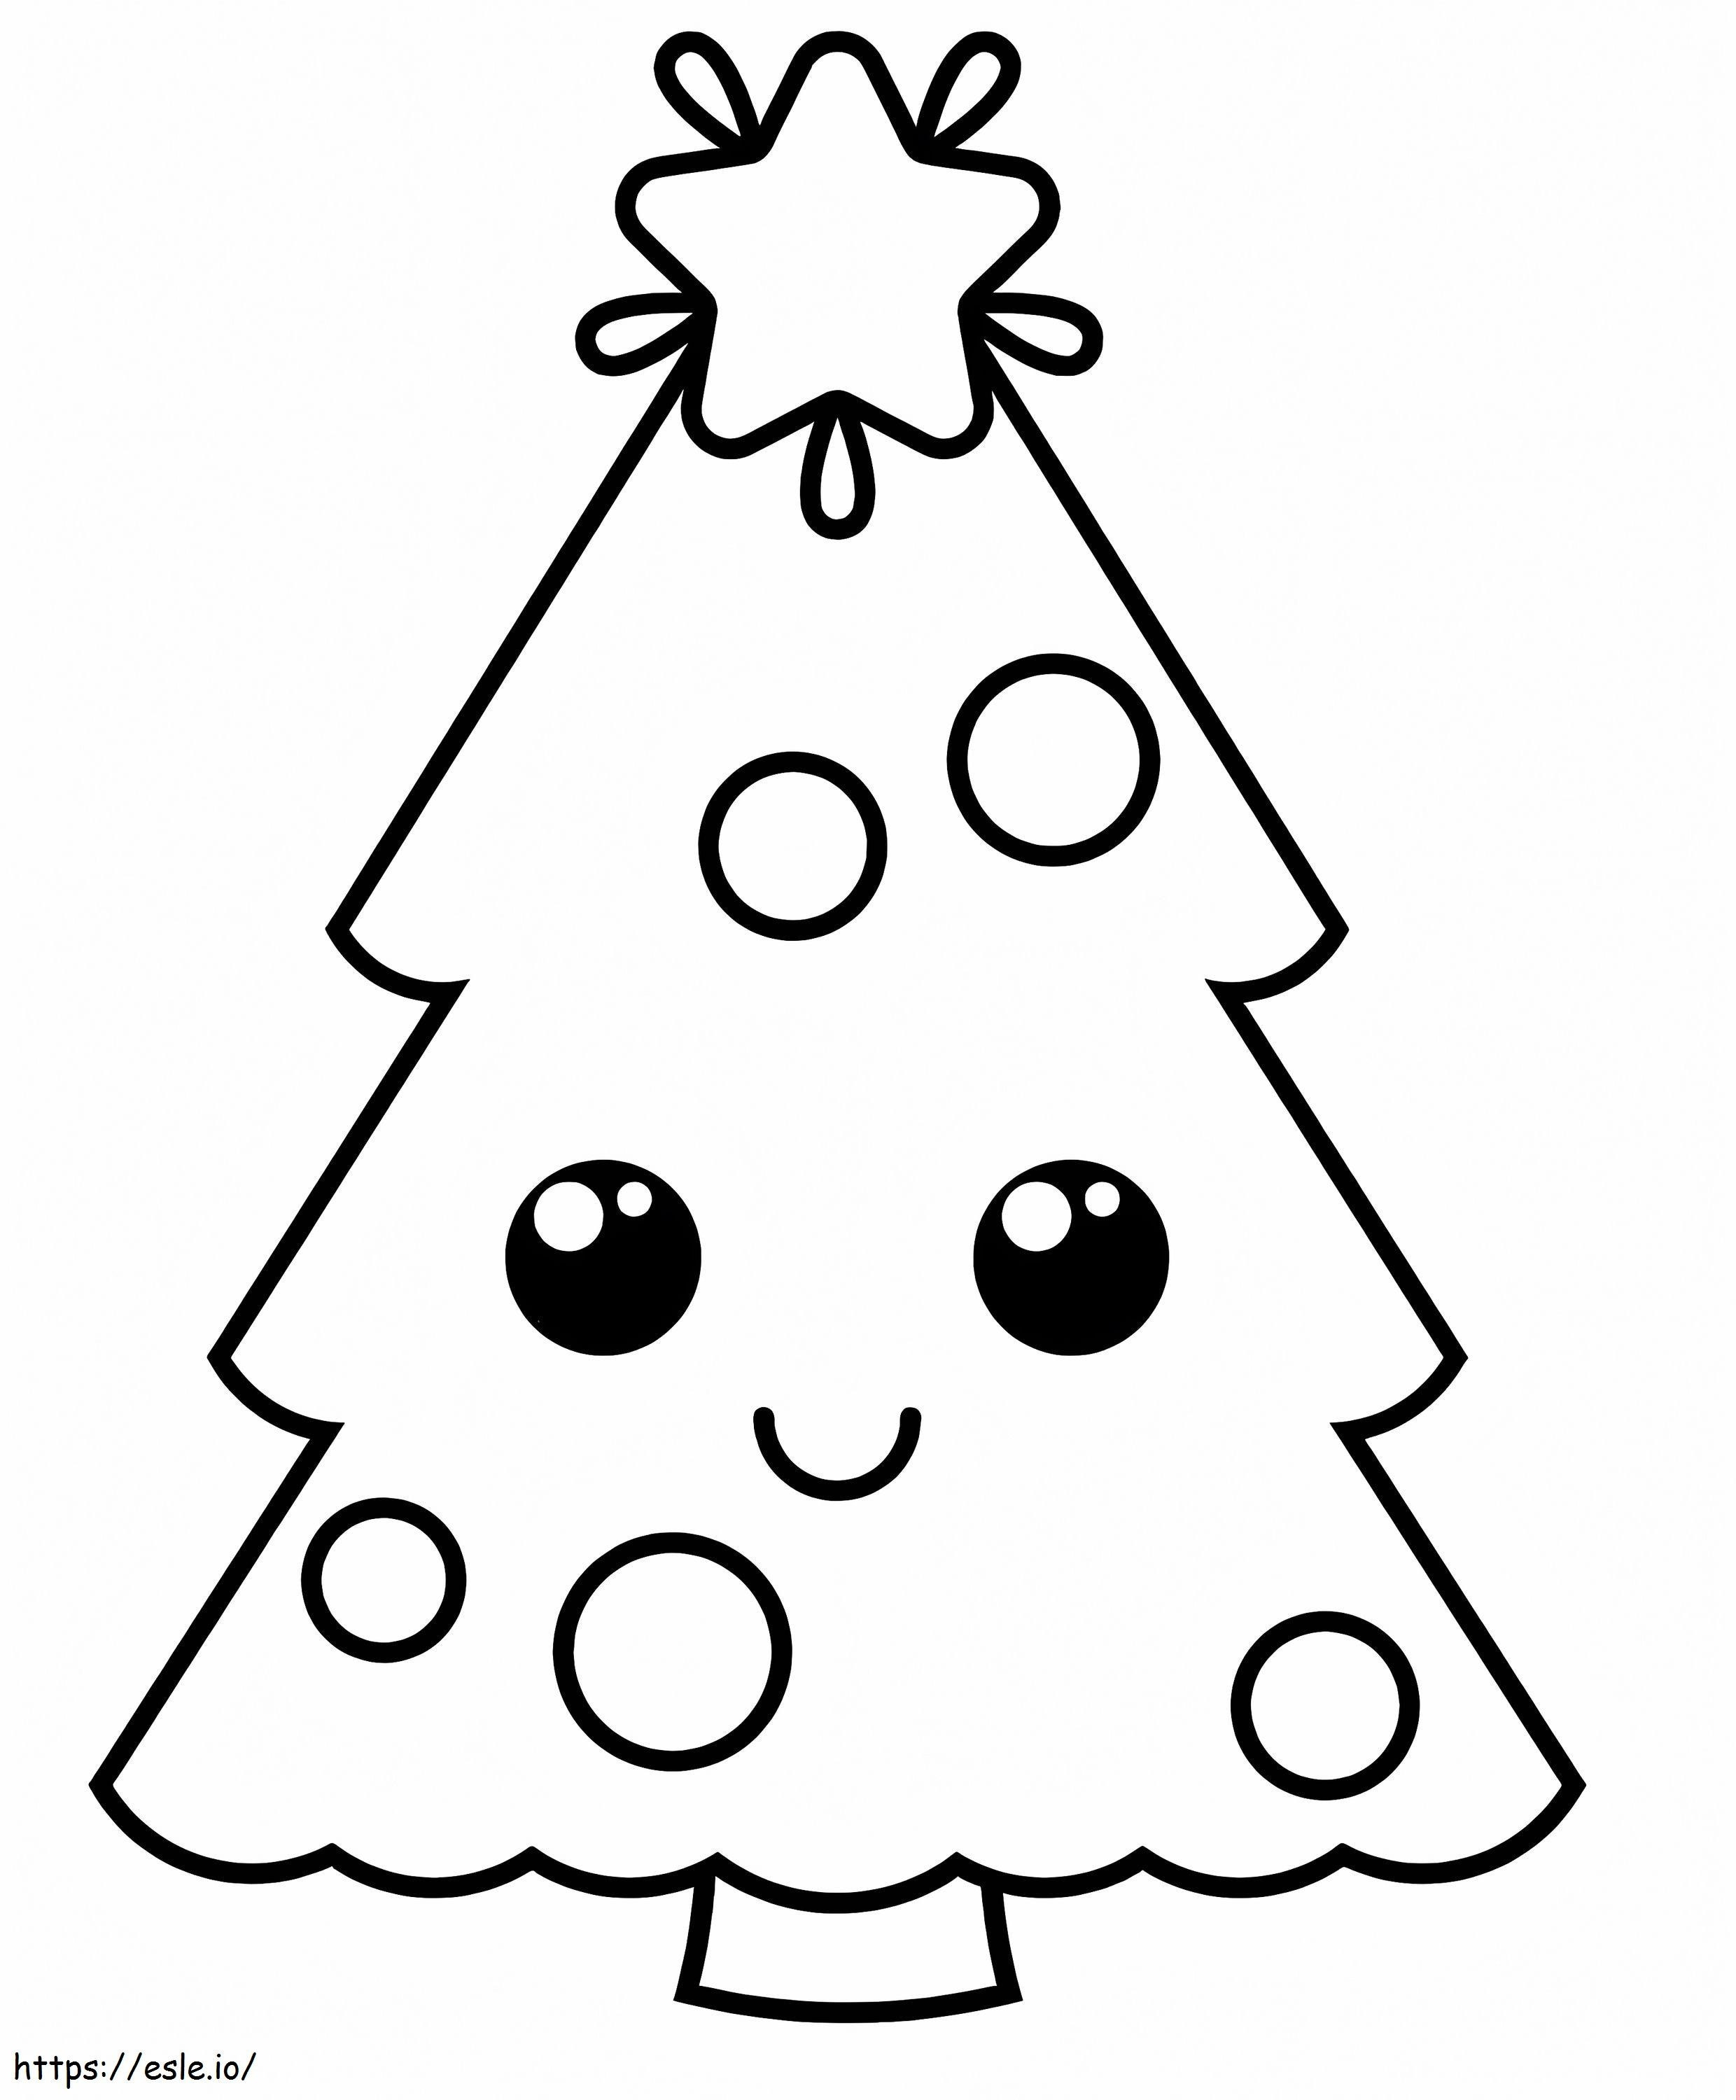 Niedlicher lächelnder Weihnachtsbaum ausmalbilder